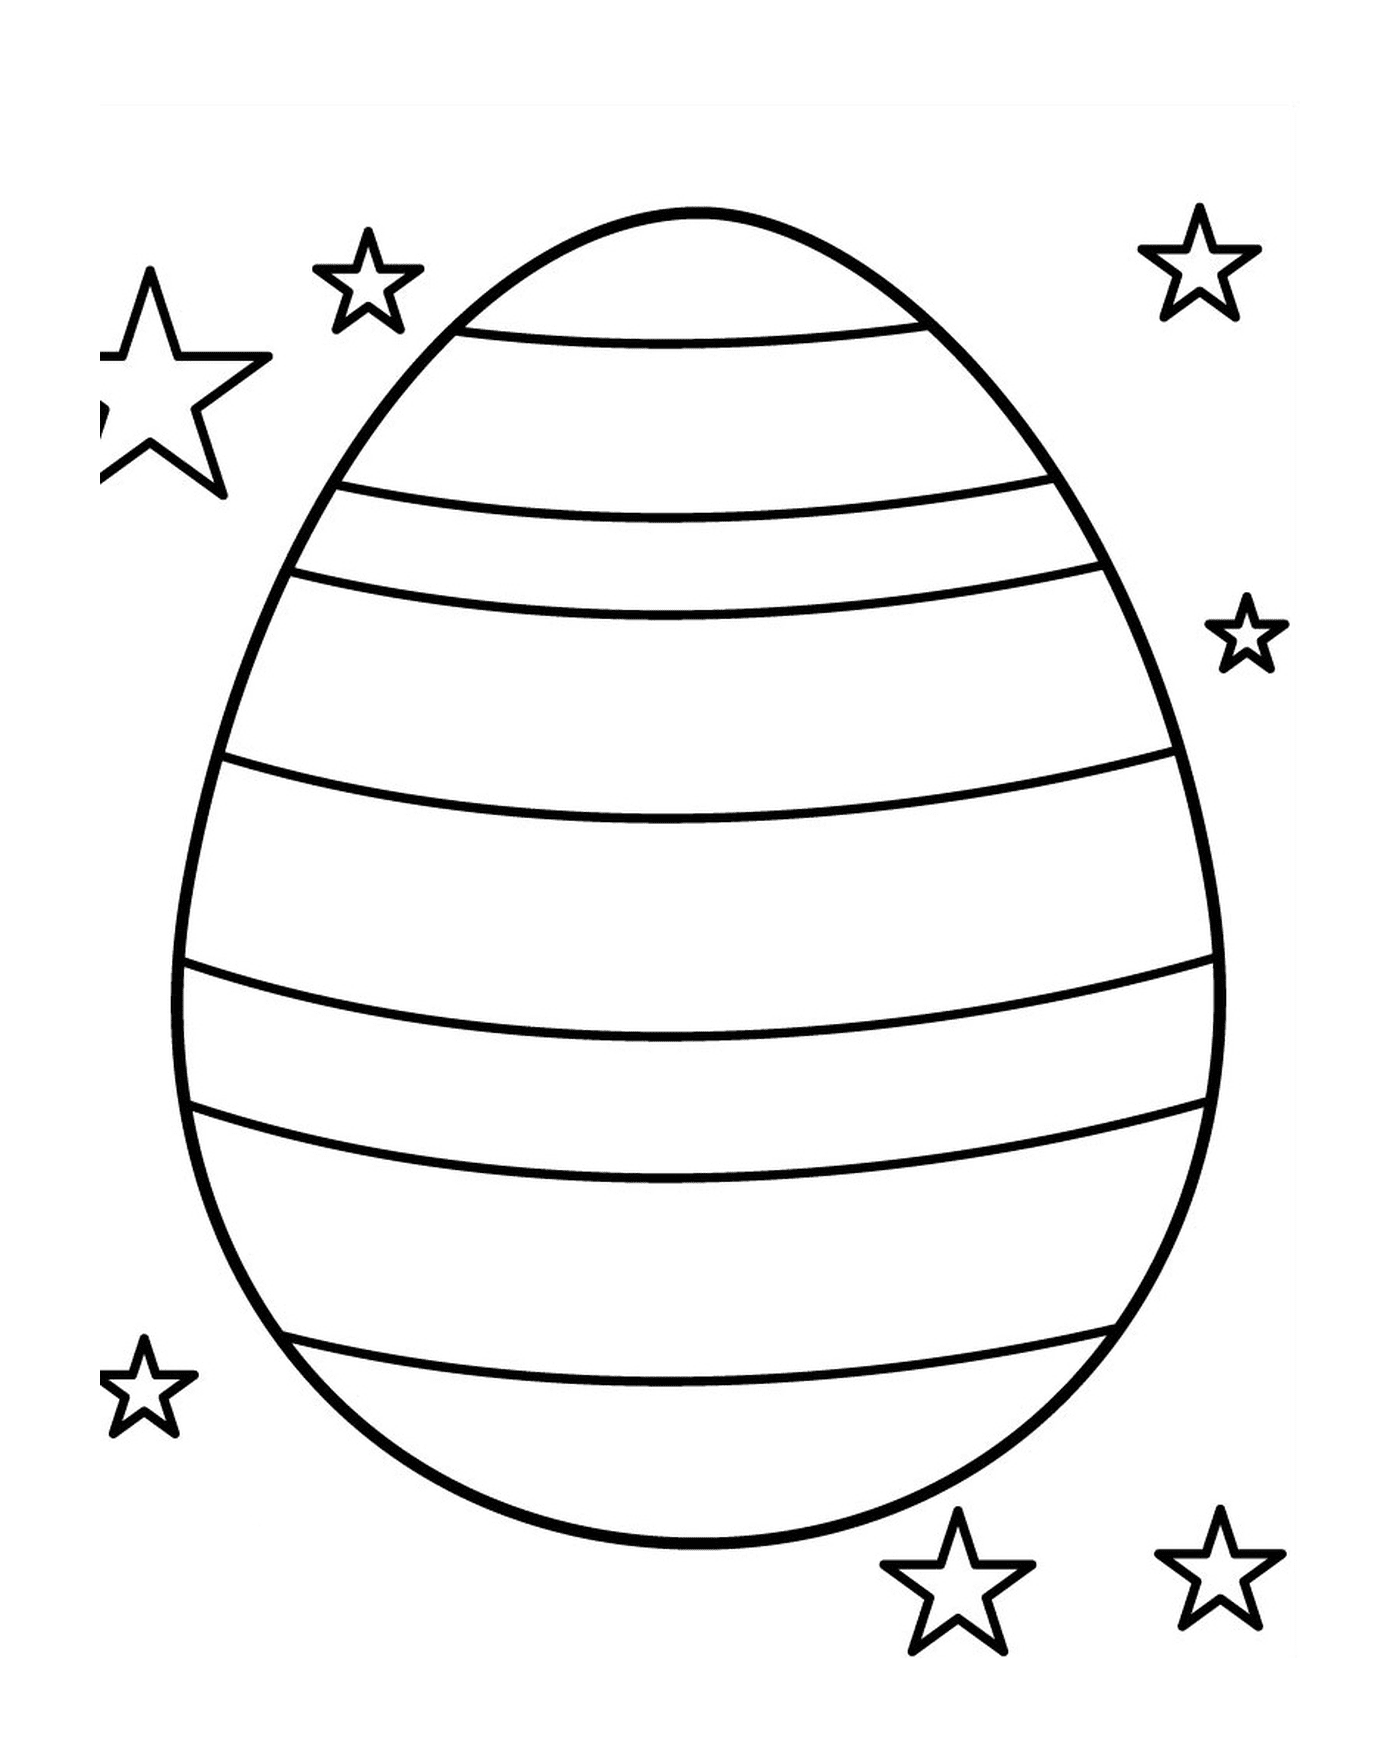  Un huevo de Pascua estrellado 